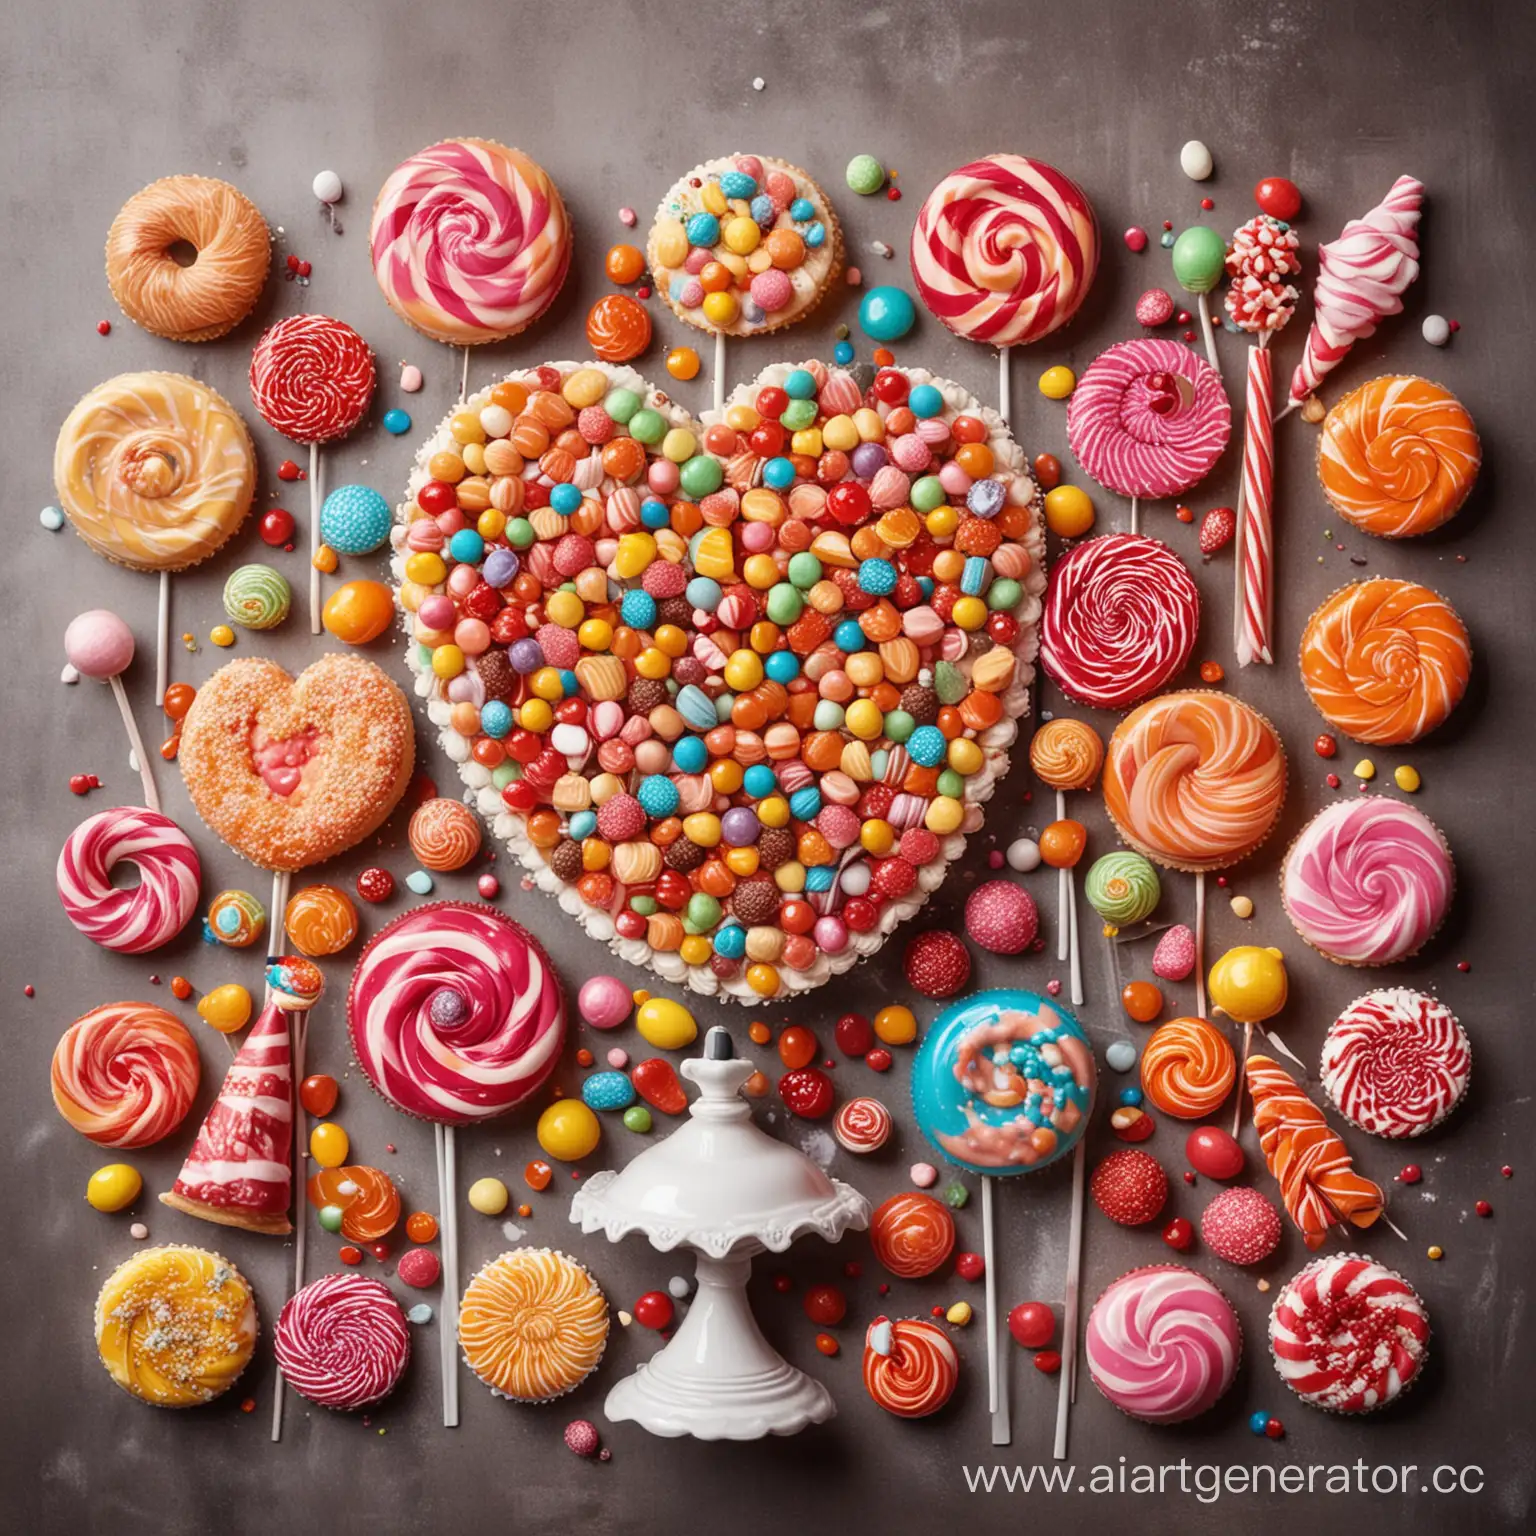 яркая картинка с настоящими сладостями: конфеты, пирожные, торты, леденцы